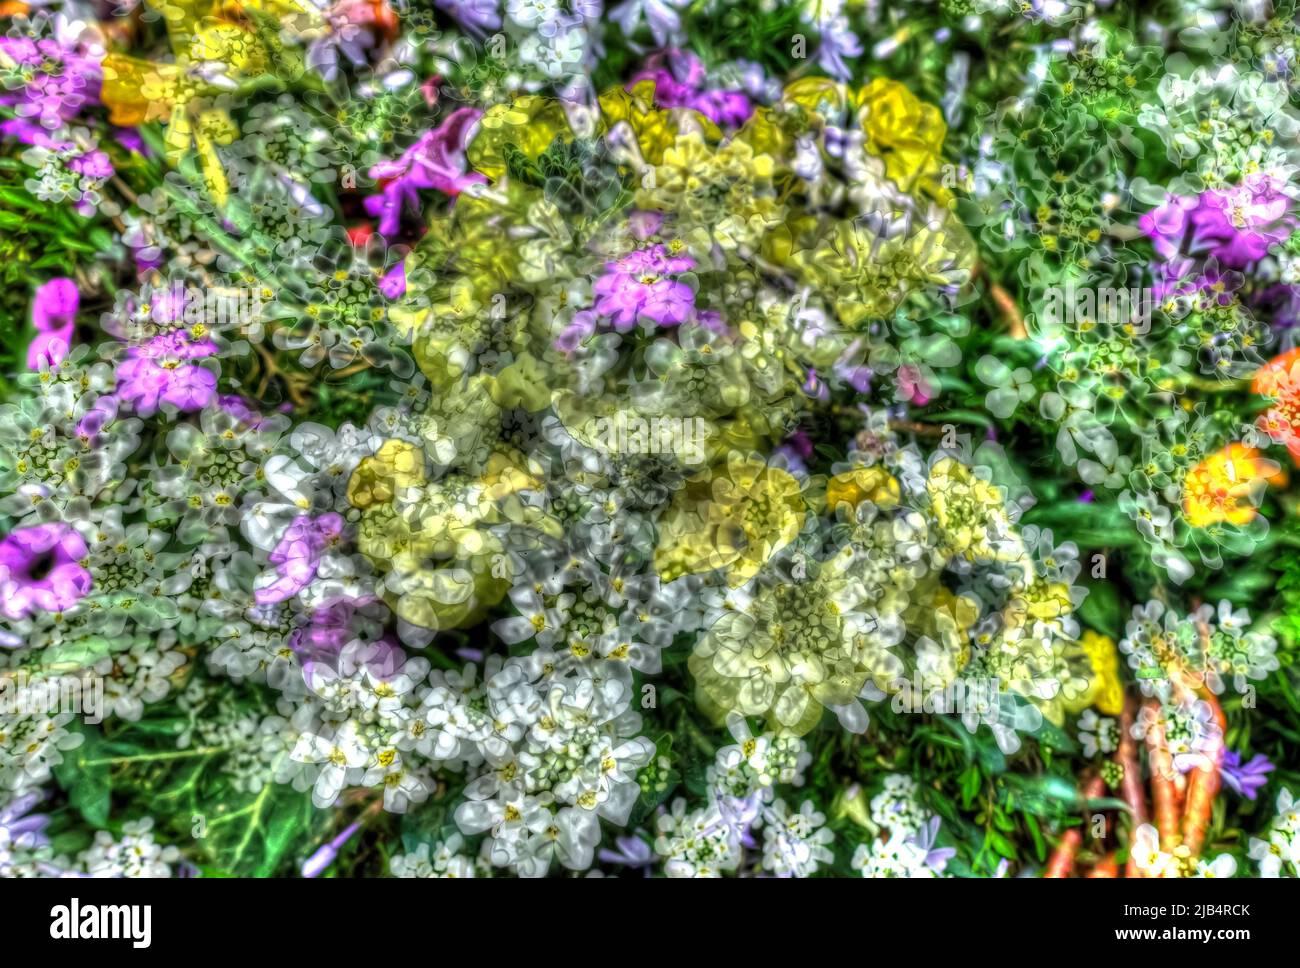 Fiori creativi, colpo artistico, caramelle (Iberis), fiori bianchi, gialli e porpora alienati, piante, mix di fiori, coperta di terra, fragrante, tutto Foto Stock